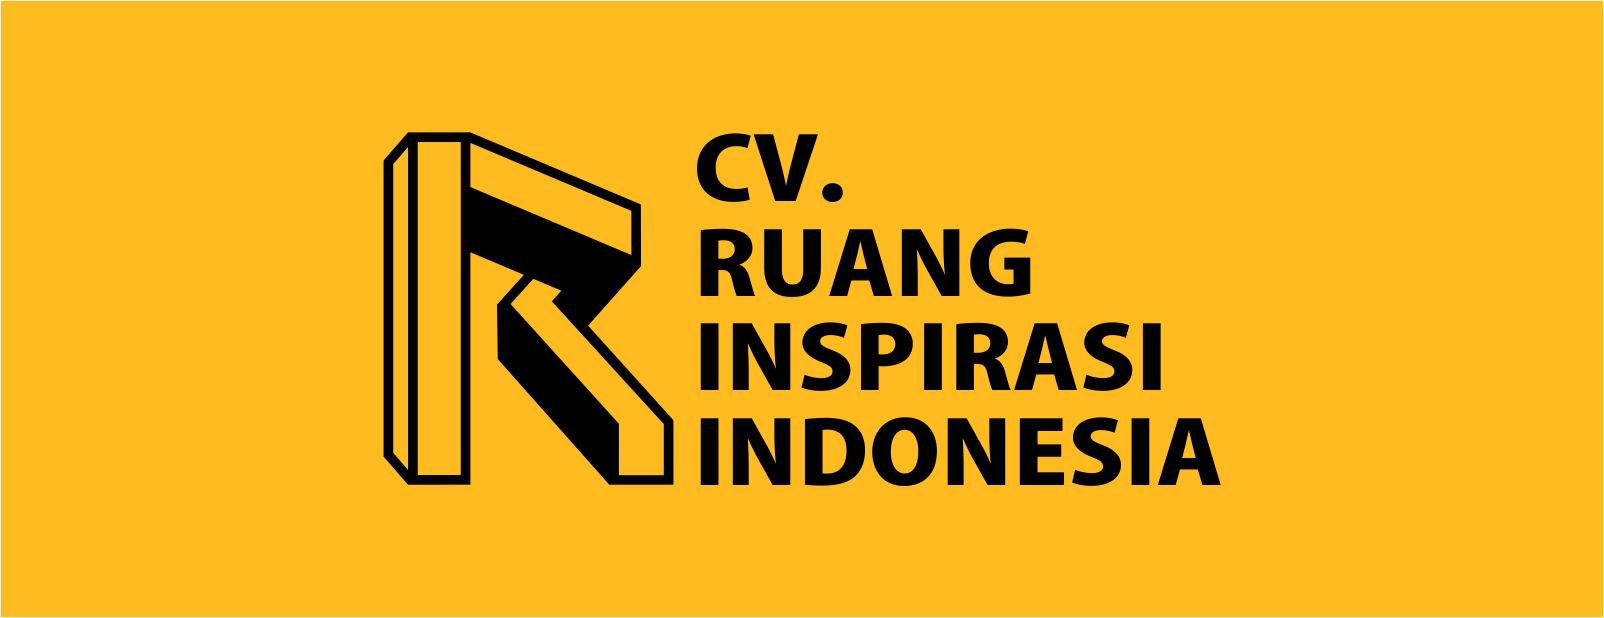 CV RUANG INSPIRASI INDONESIA